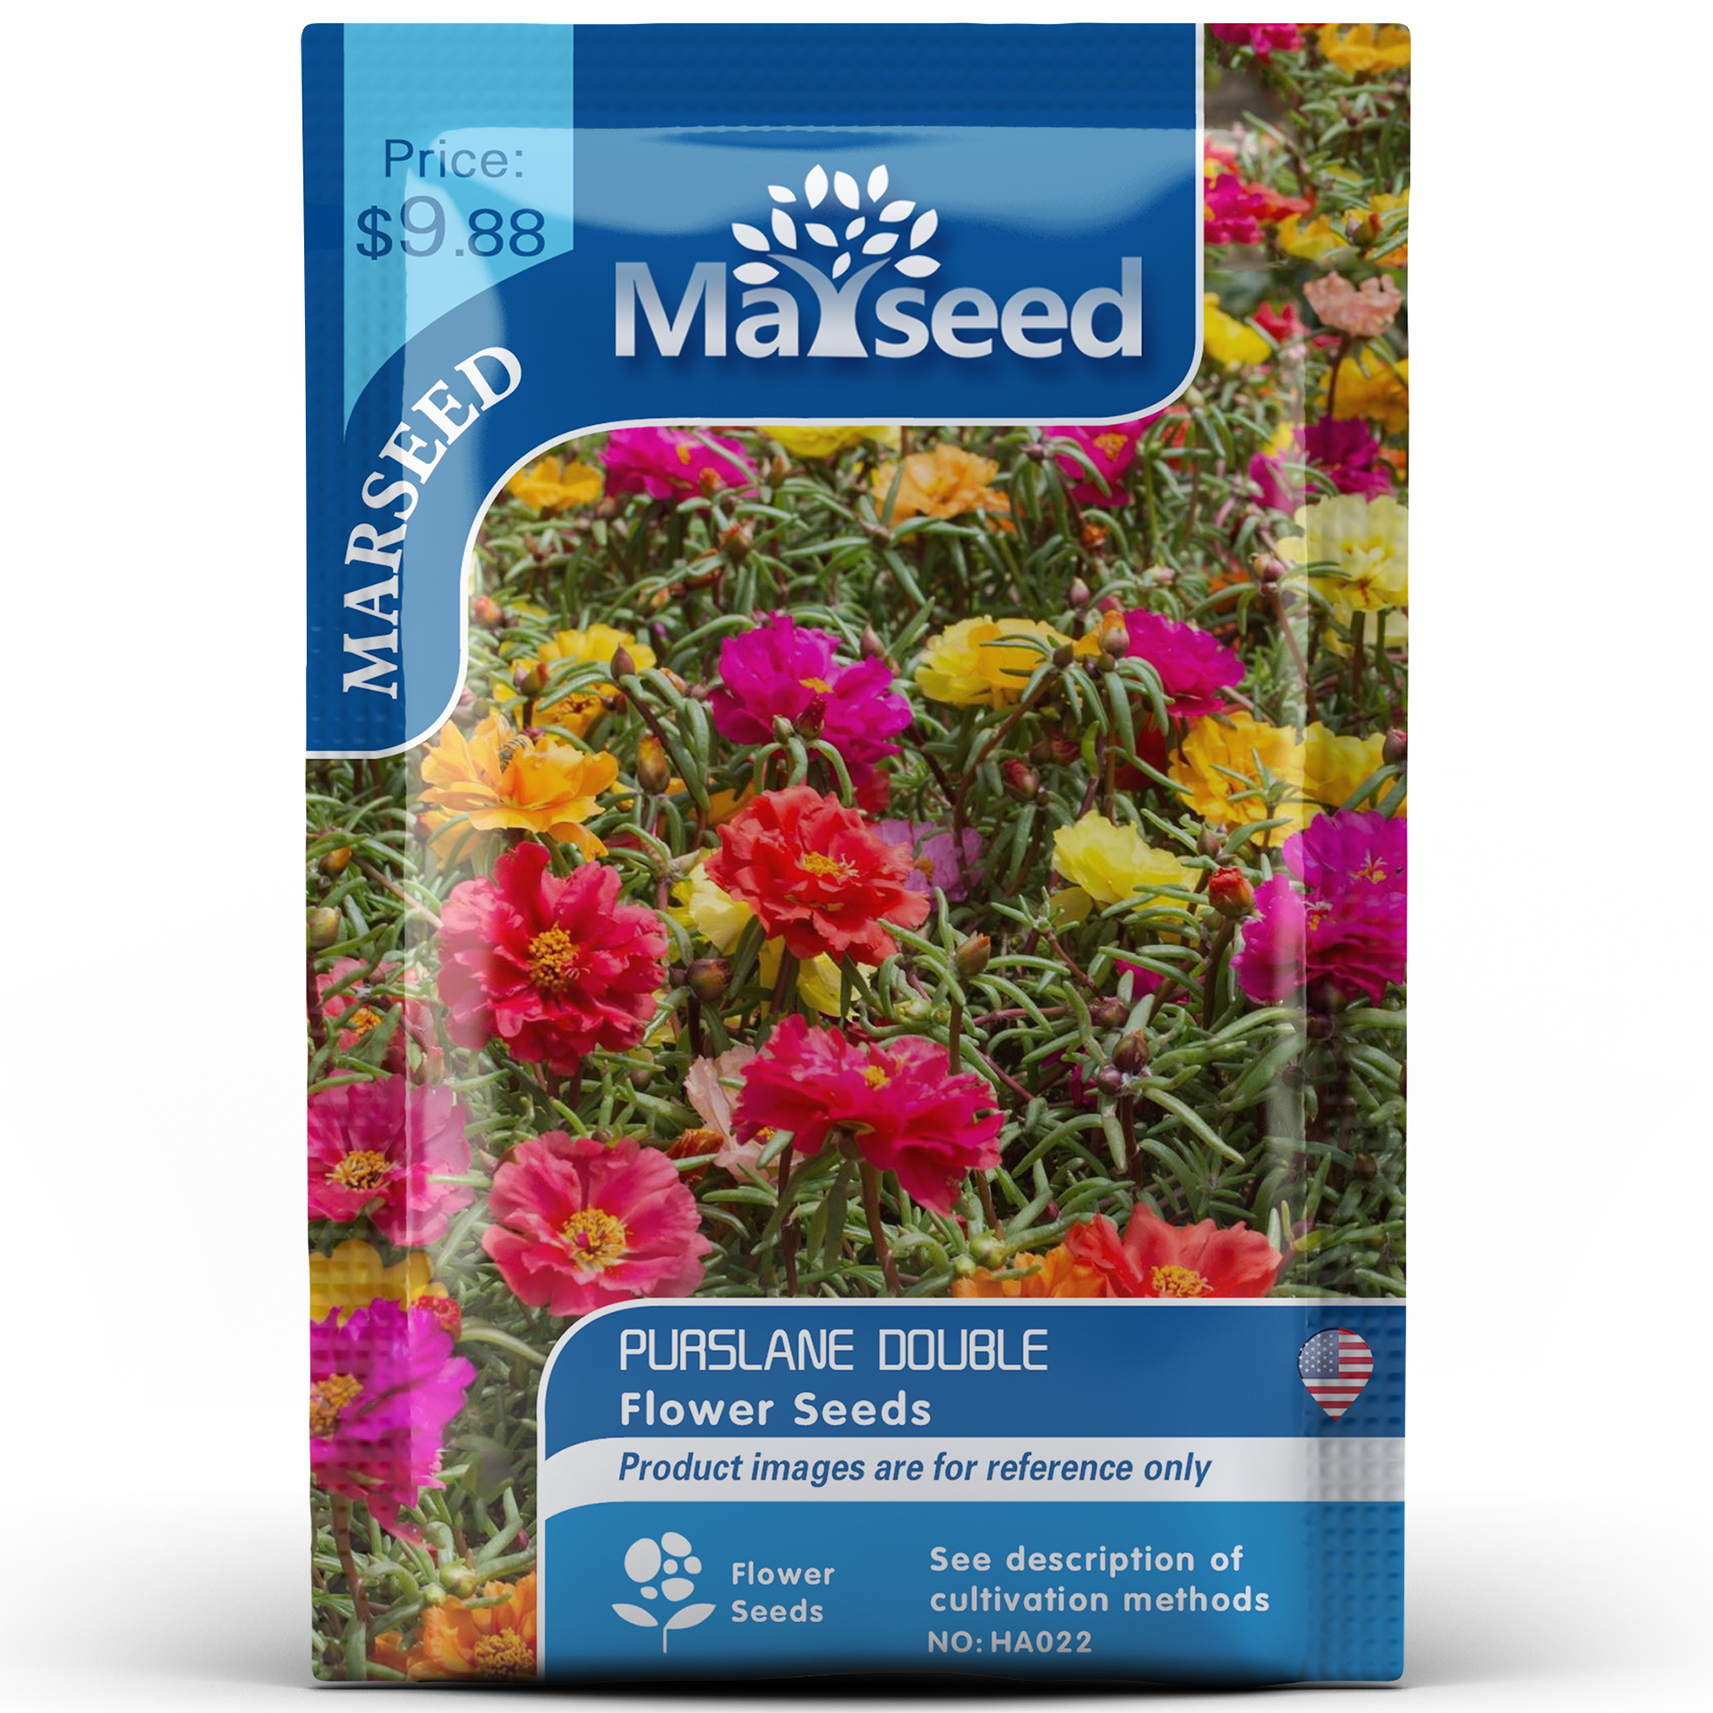 【MARSEED火星家】整包200粒太阳花种子籽孑 HA022 鲜花速递/花卉仿真/绿植园艺 家庭园艺种子 原图主图